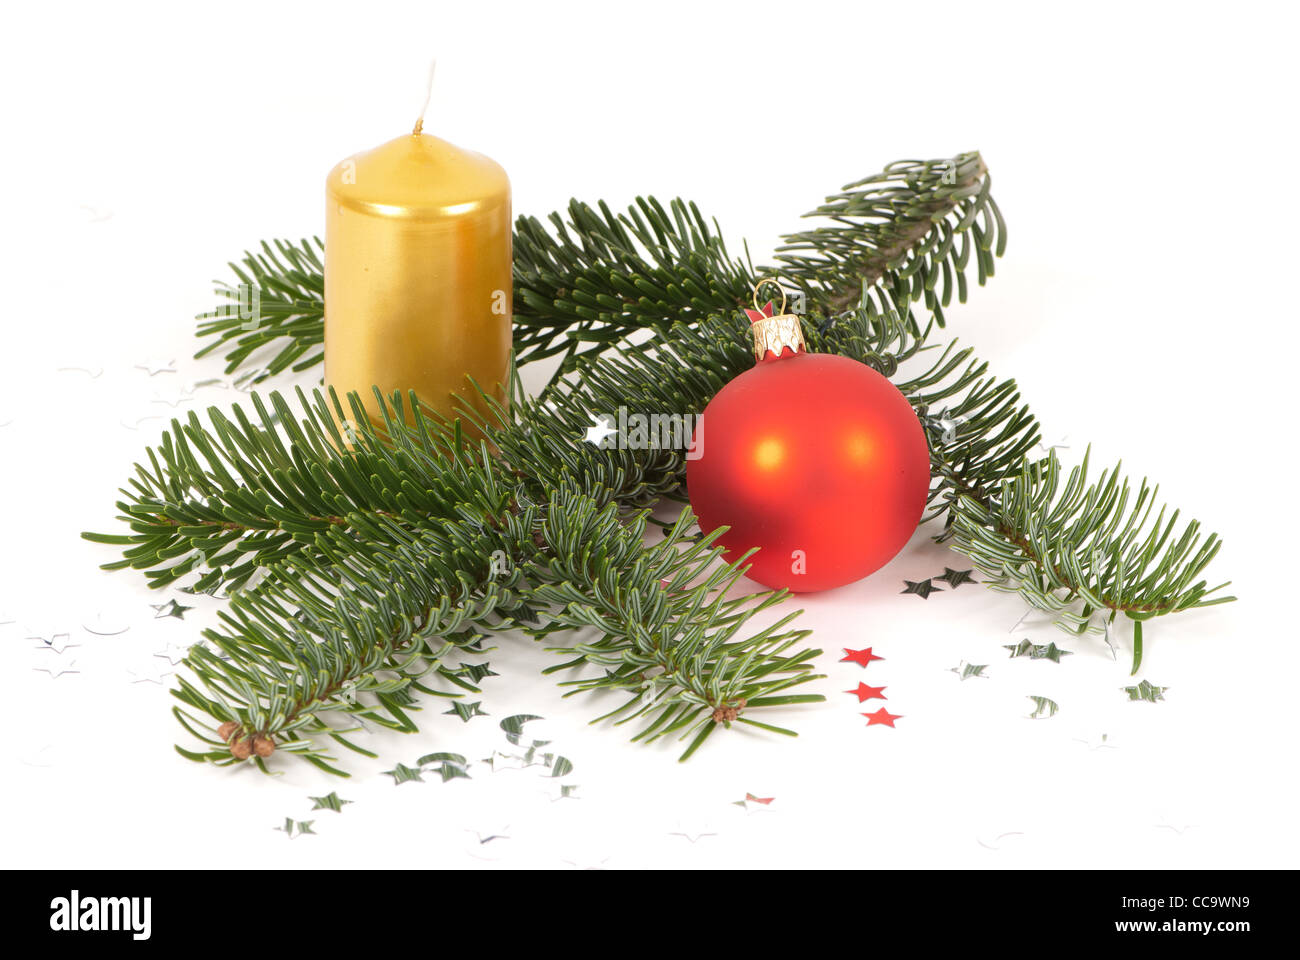 Disposizione di natale con ramoscello fir, una palla di Natale e una candela di colore giallo Foto Stock